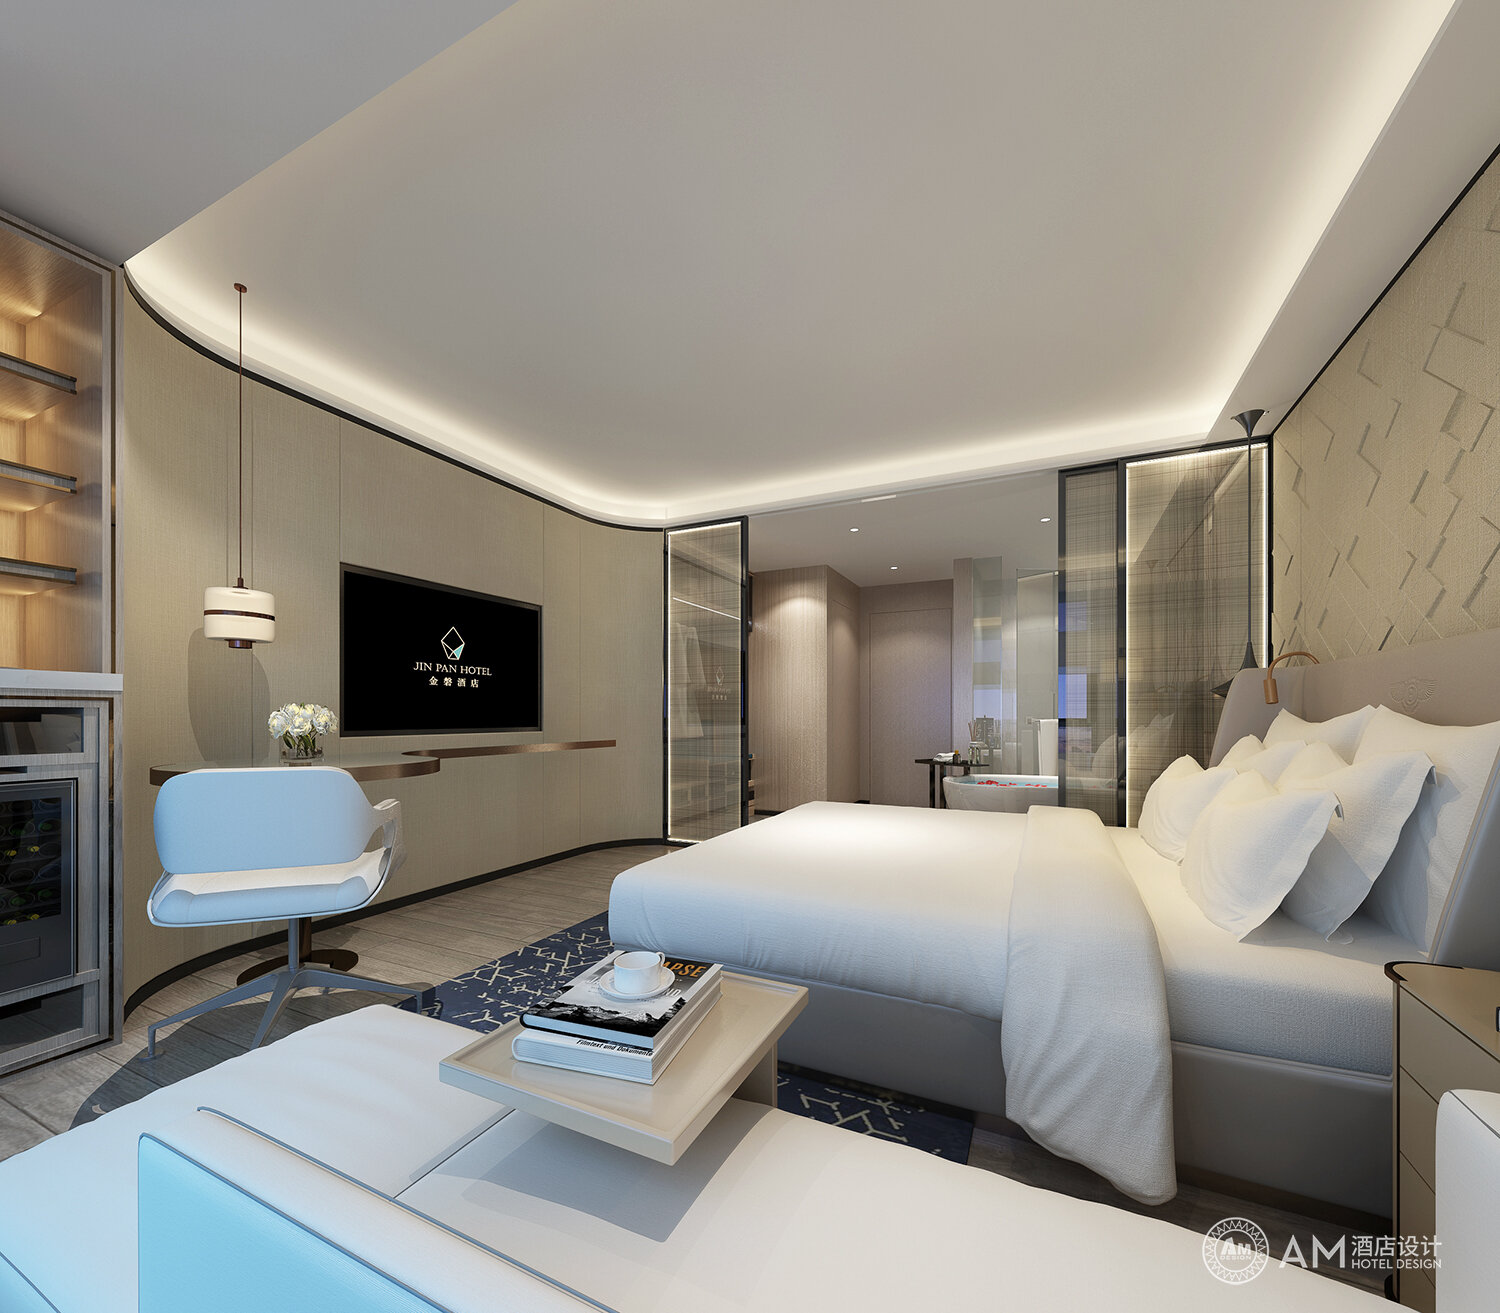 AM DESIGN | Jinpan Hotel Guest Room Design